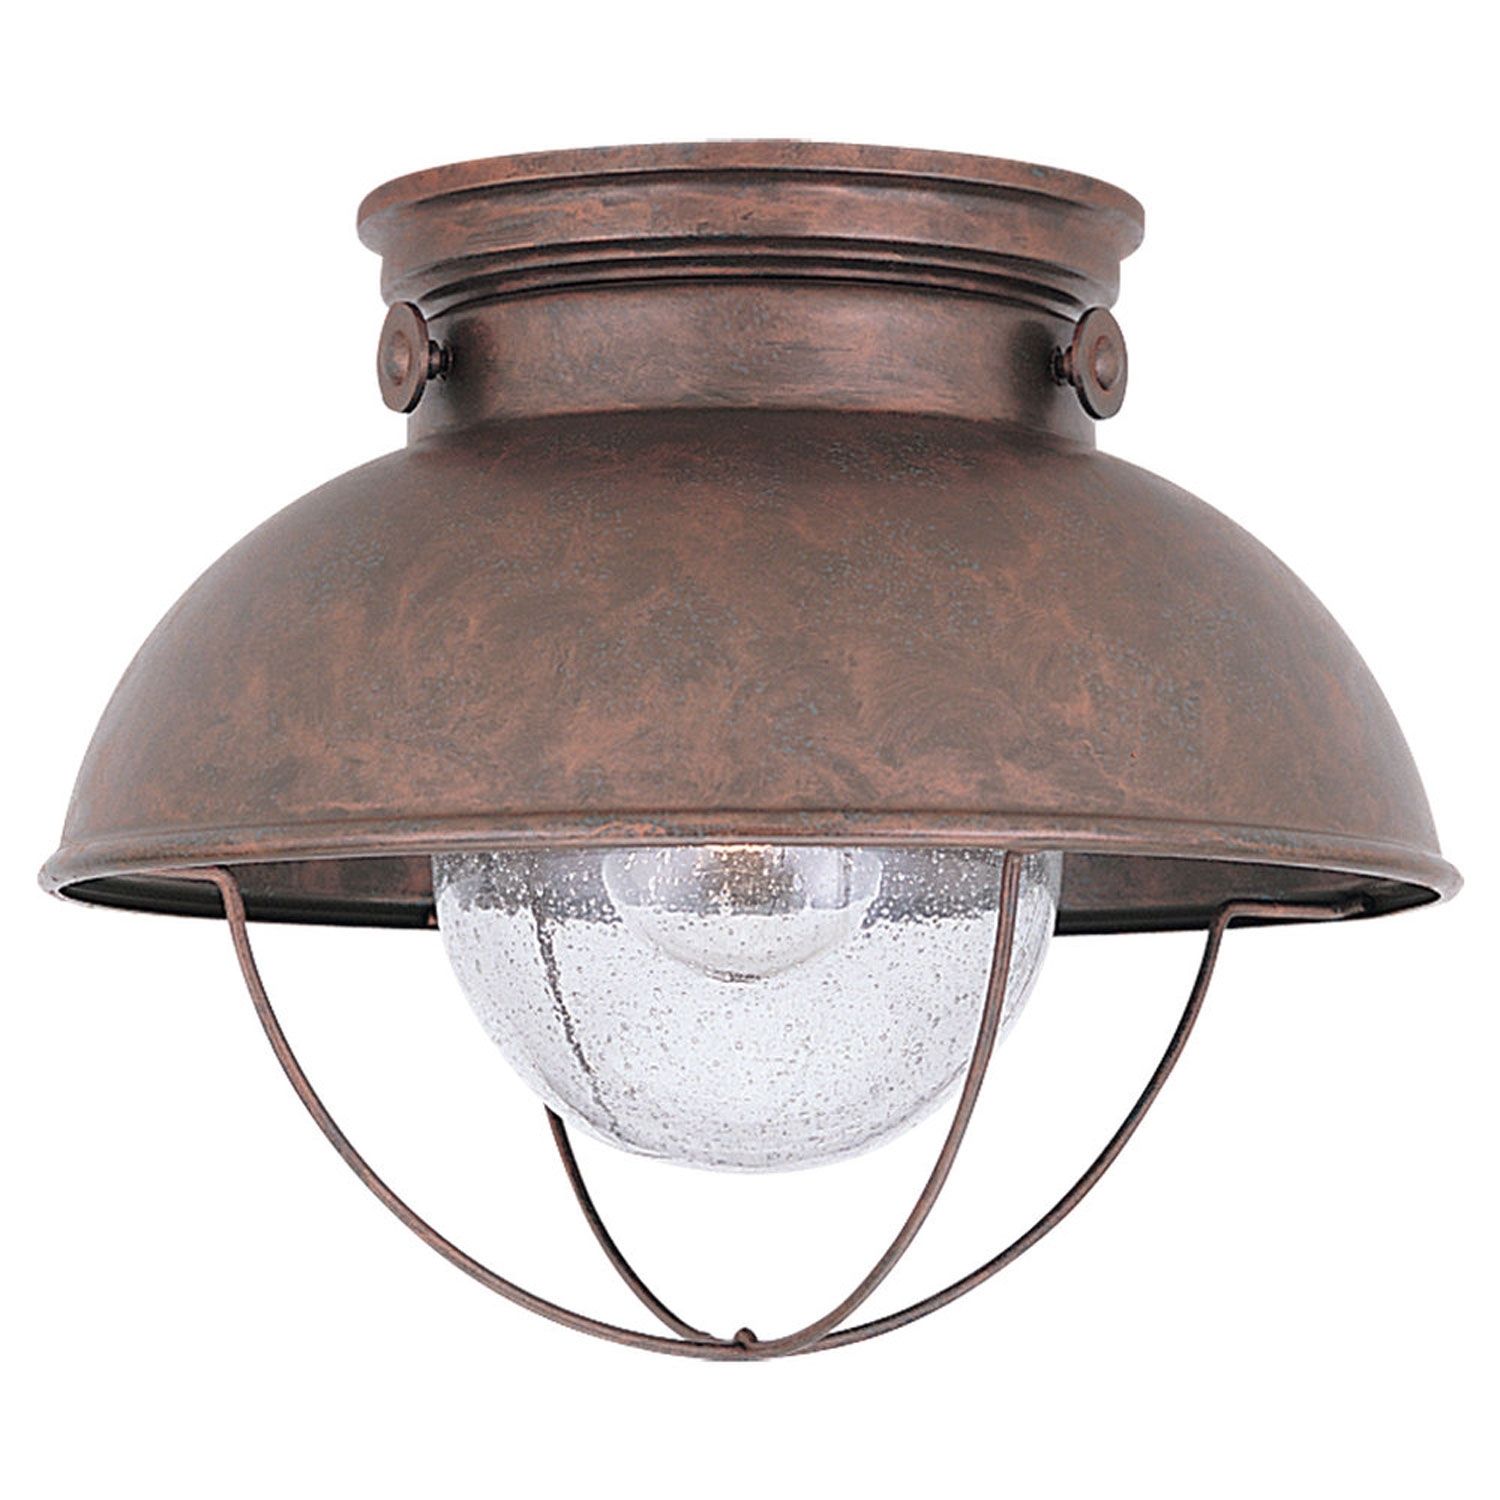 Outdoor Ceiling Lighting | Exterior Light Fixtures In Bronze, Copper With Bronze Outdoor Ceiling Lights (View 3 of 15)